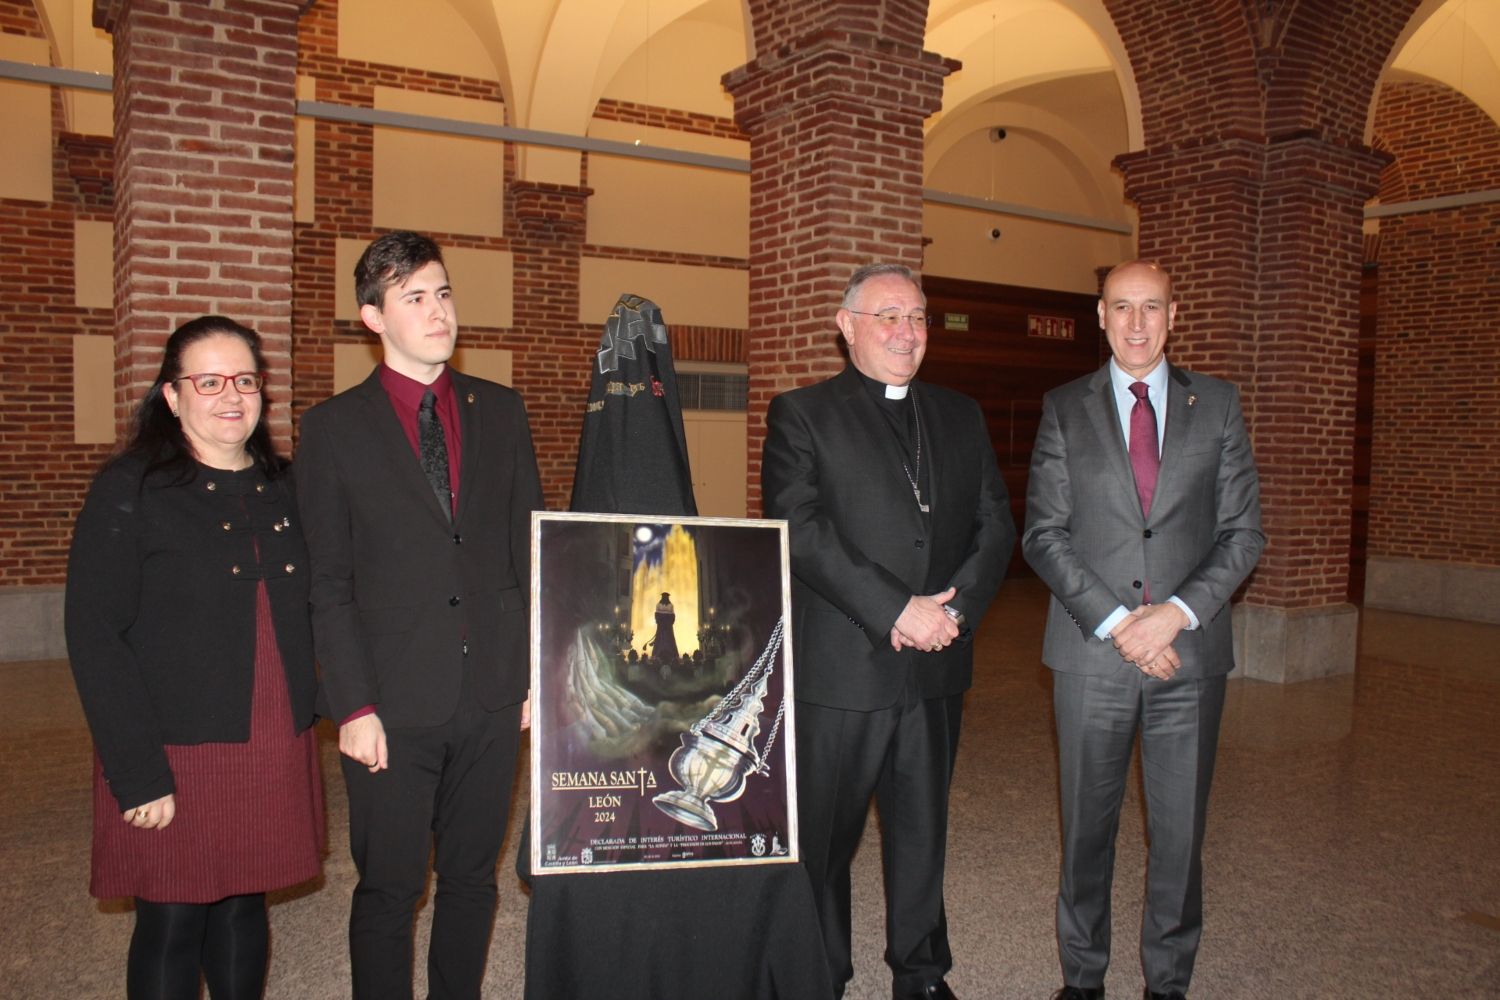 La Semana Santa de León se presenta en un cartel lleno de simbolismo donde predomina el juego de luces y sombras